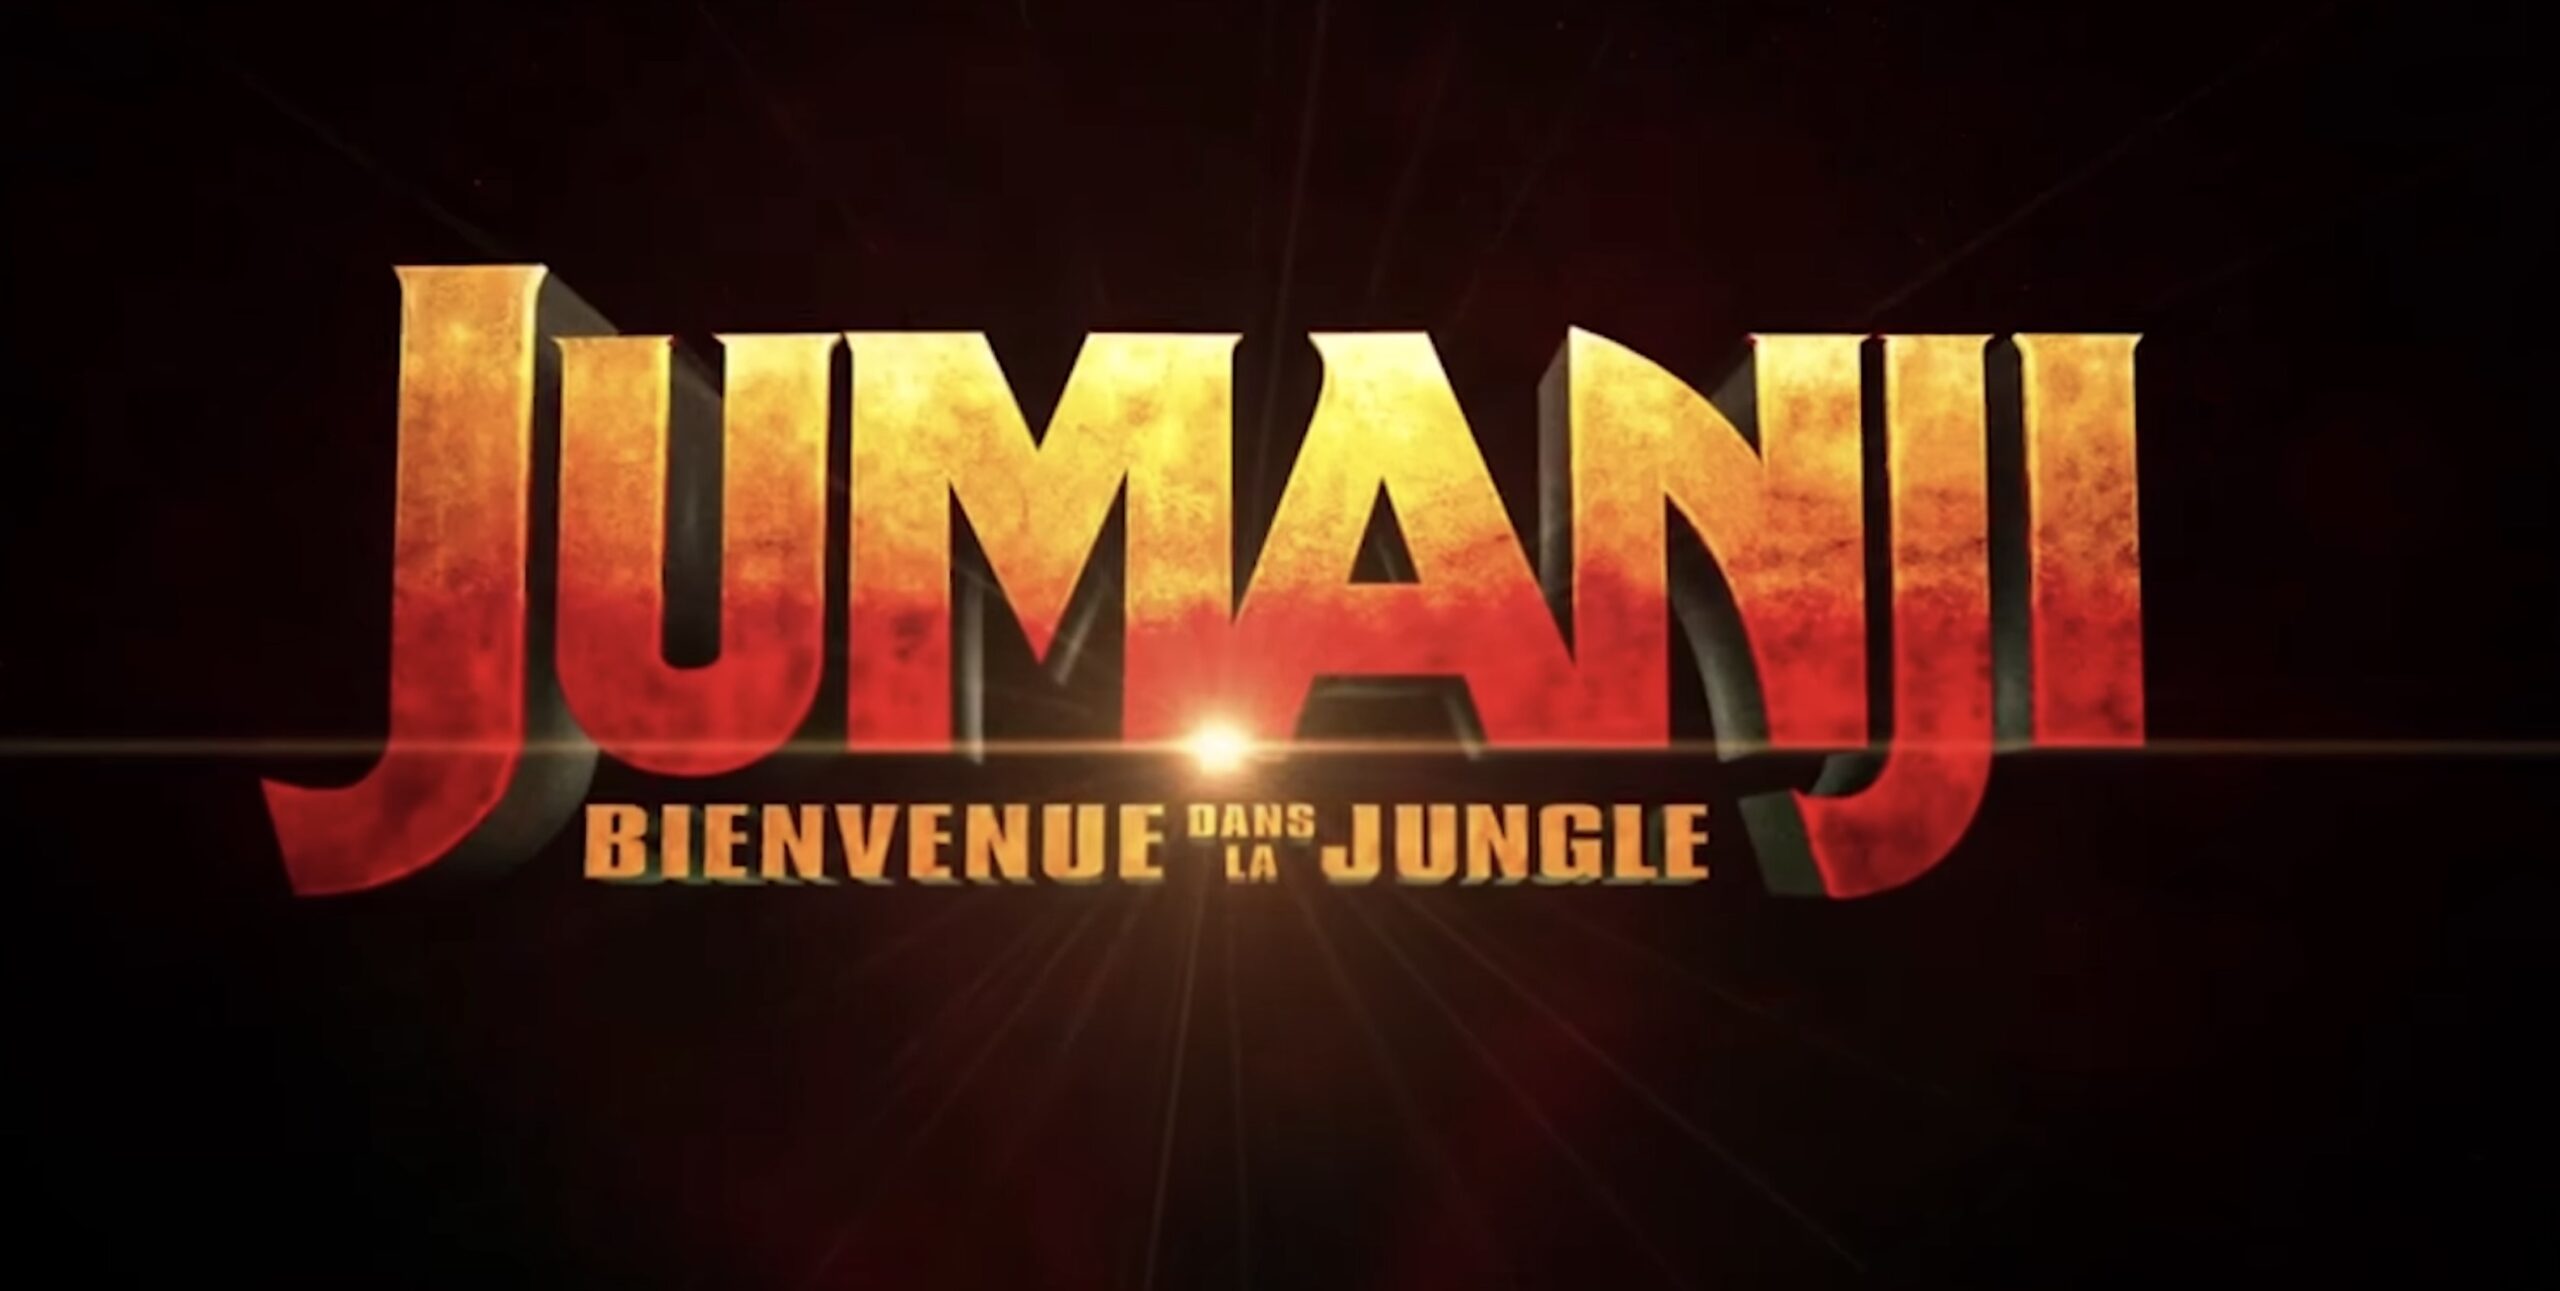 Jumanji 2, un film à ne pas regarder même dans une situation désespérée